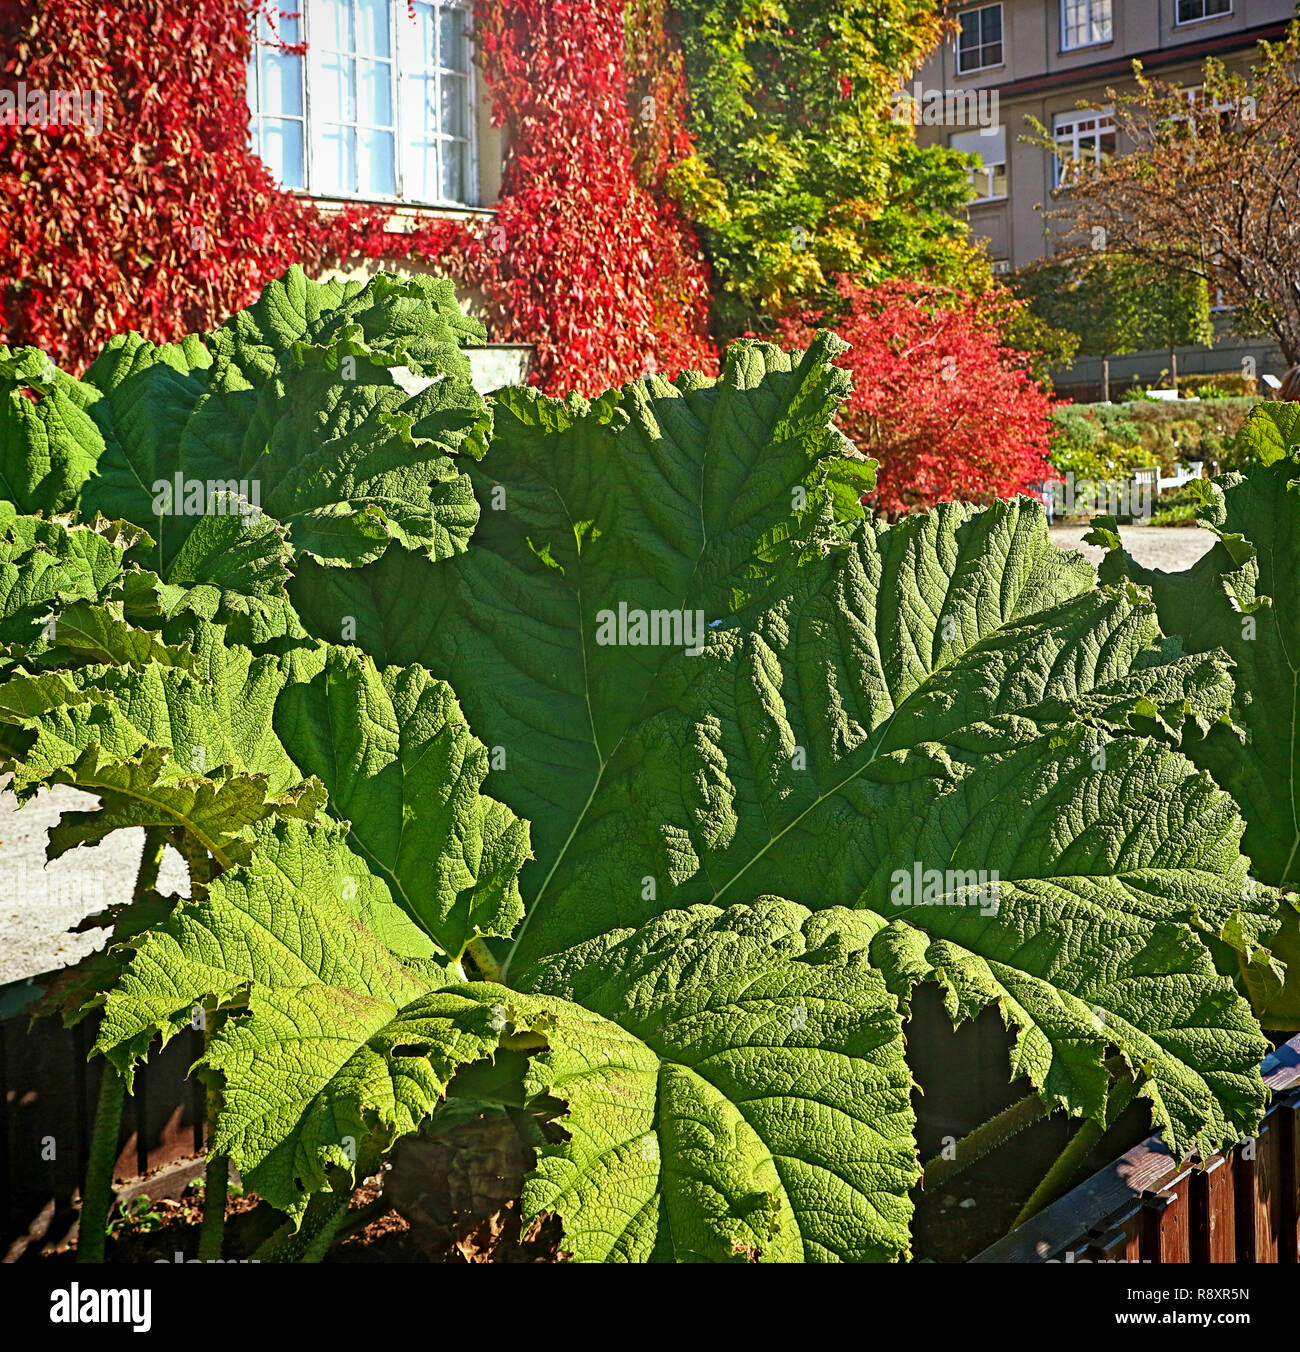 Riesige Blätter, Gunnera dolmetsch oder riesige Rhabarber, Pflanze südlichen Chile als Zierpflanzen in Gärten und Parks Stockfoto